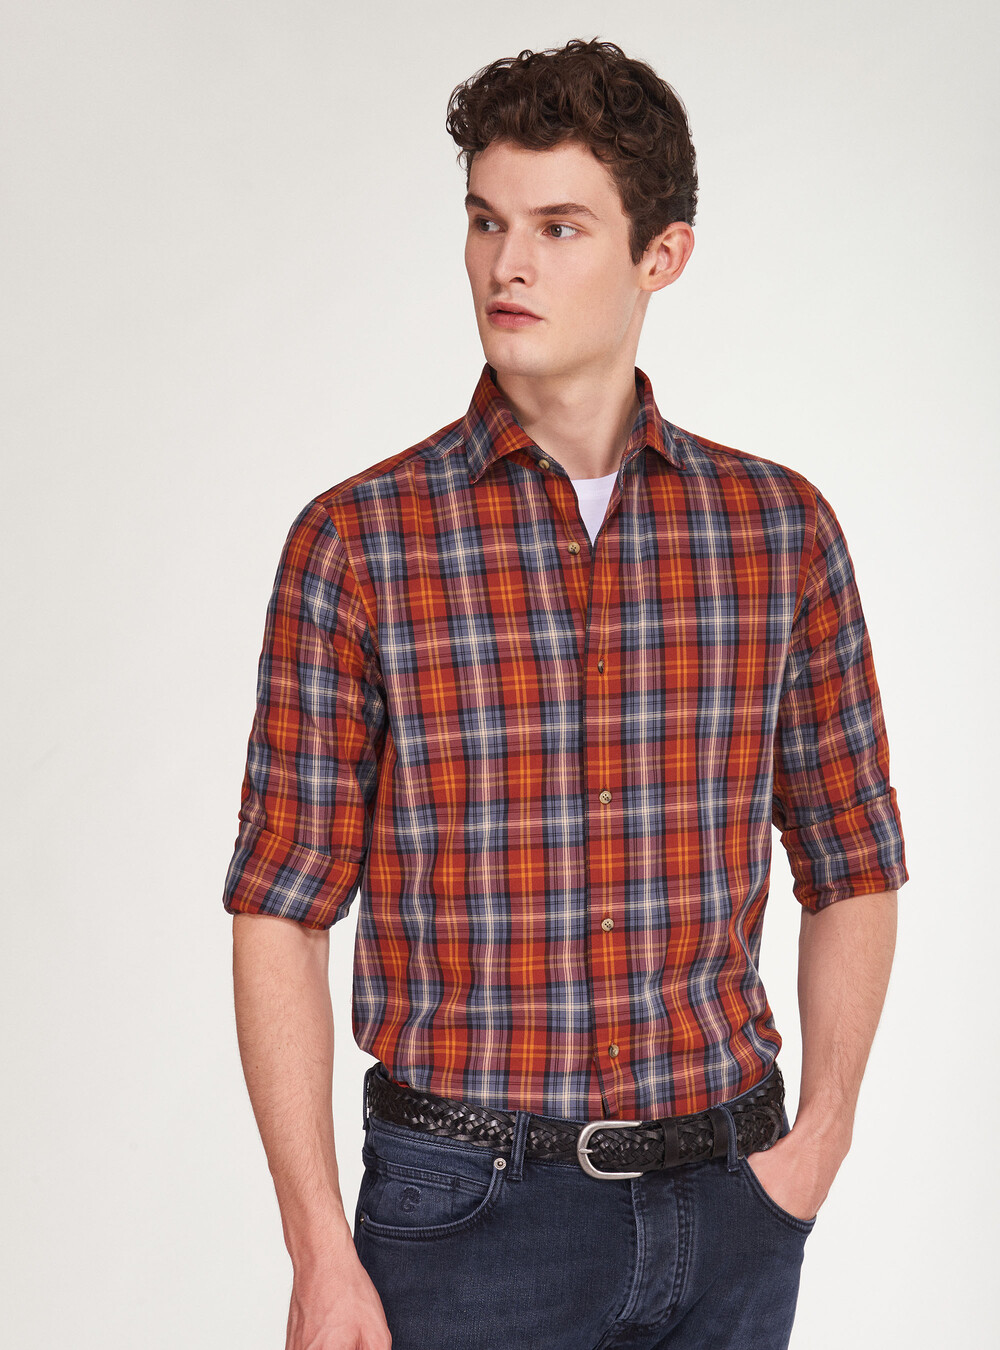 Plaid flannel shirt | GutteridgeEU | Men's catalog-gutteridge-storefront